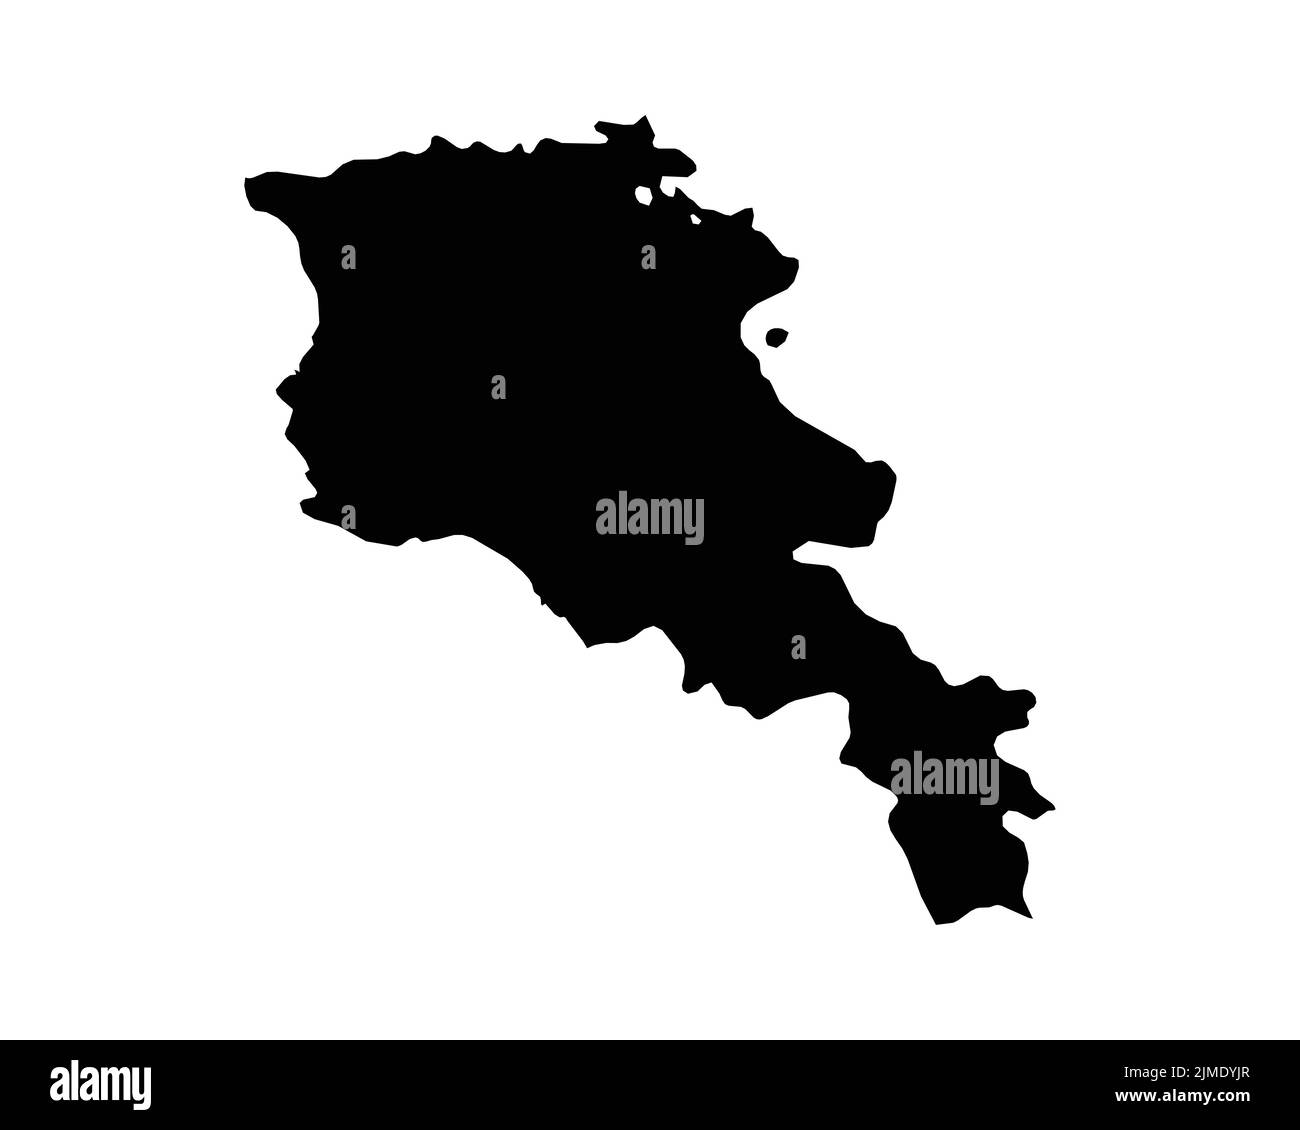 Arménie carte. Carte de pays arménien. Noir et blanc National Outline Boundary Shape Géographie territoire EPS Vector Illustration Clipart Illustration de Vecteur